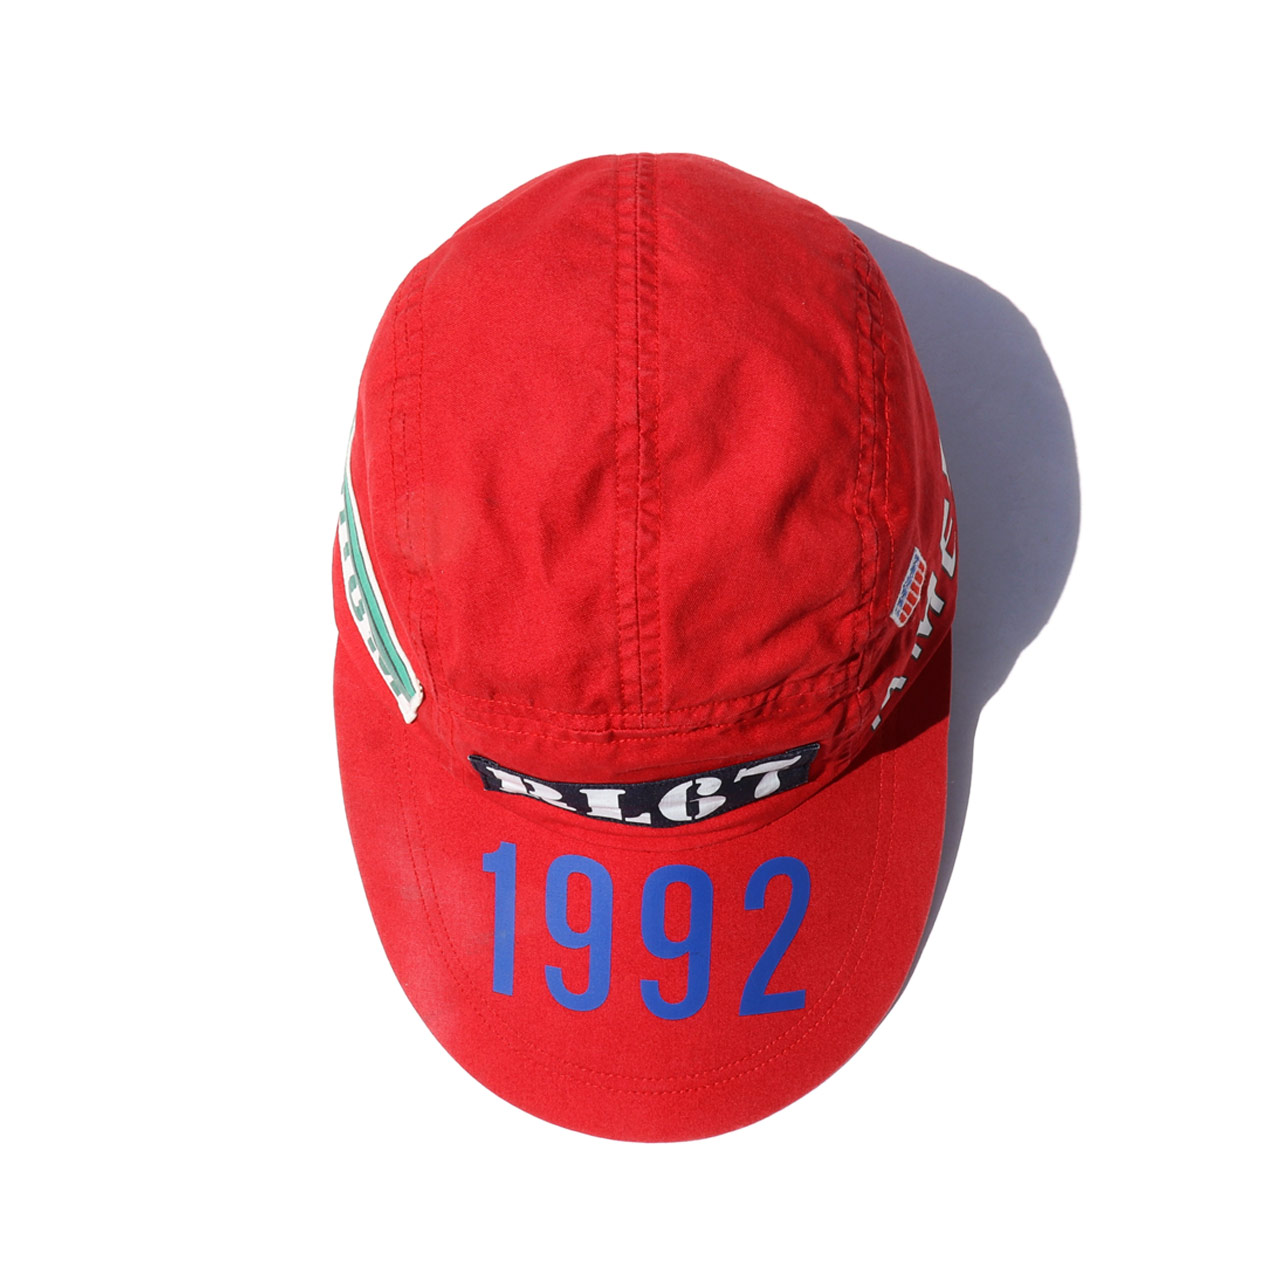 激レア polo 1992 stadium long bill 復刻 - 帽子